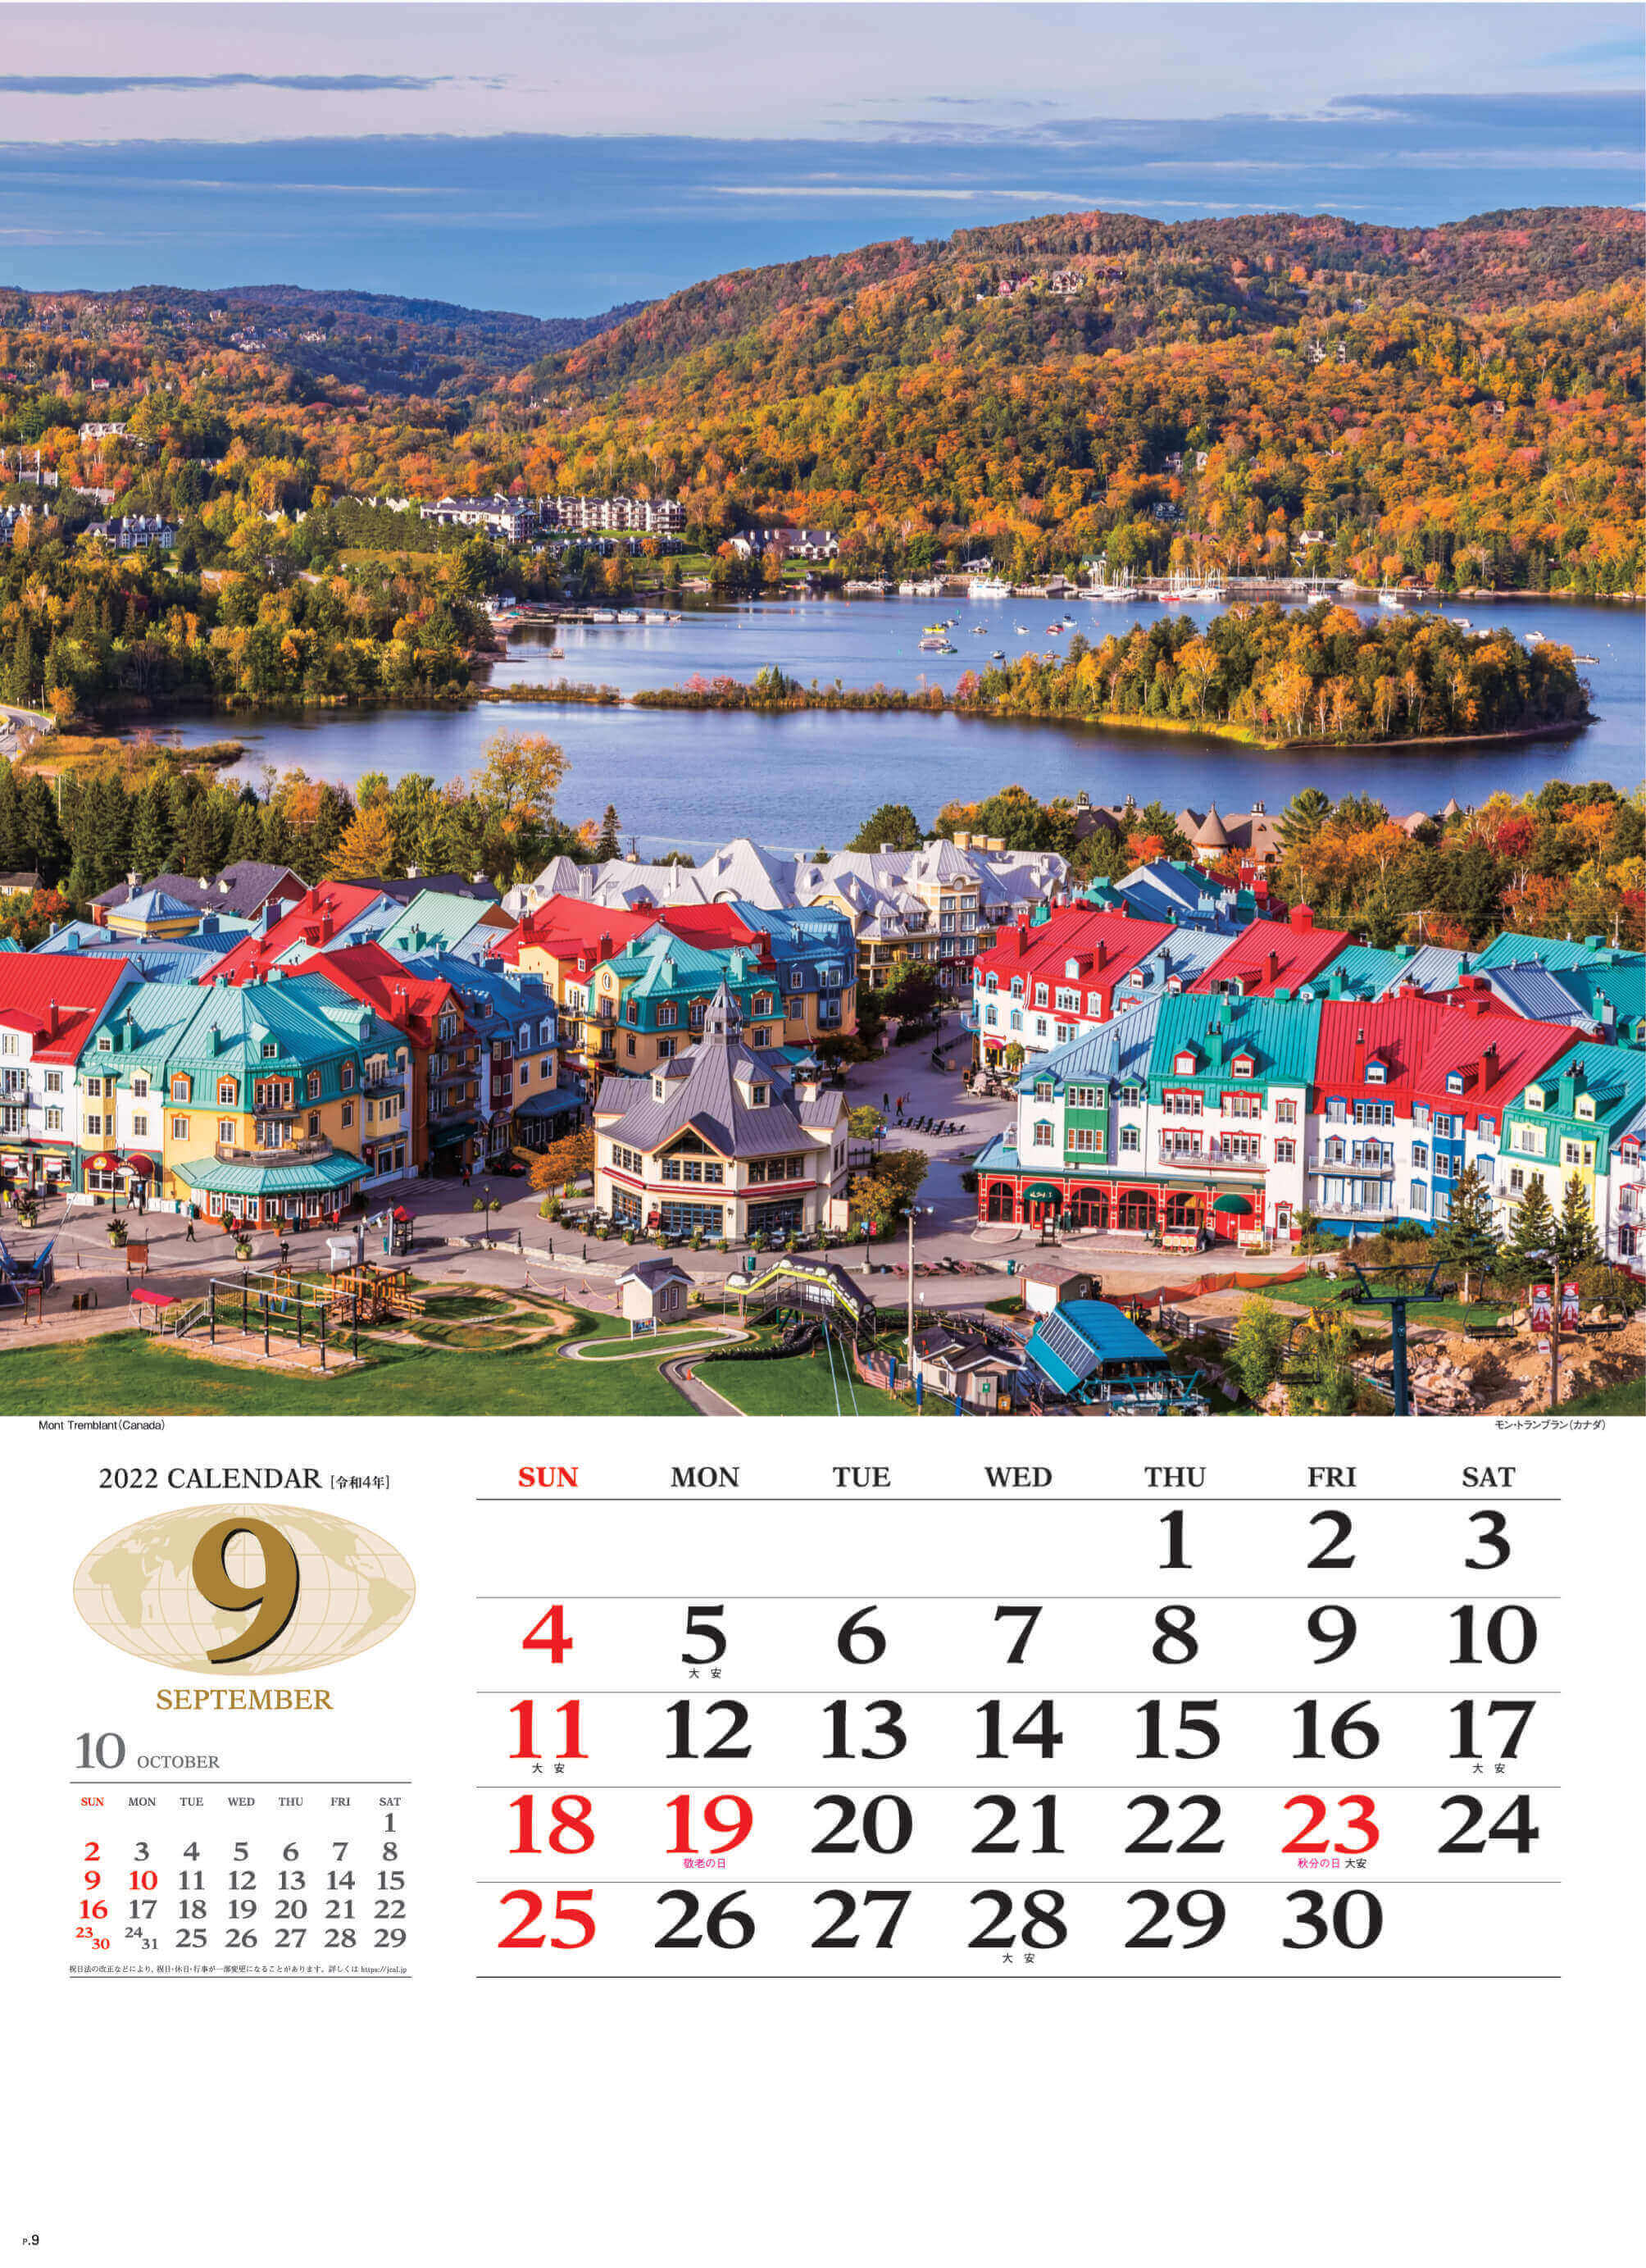 9月 モン・トランブラン カナダ 世界の景観 2022年カレンダーの画像